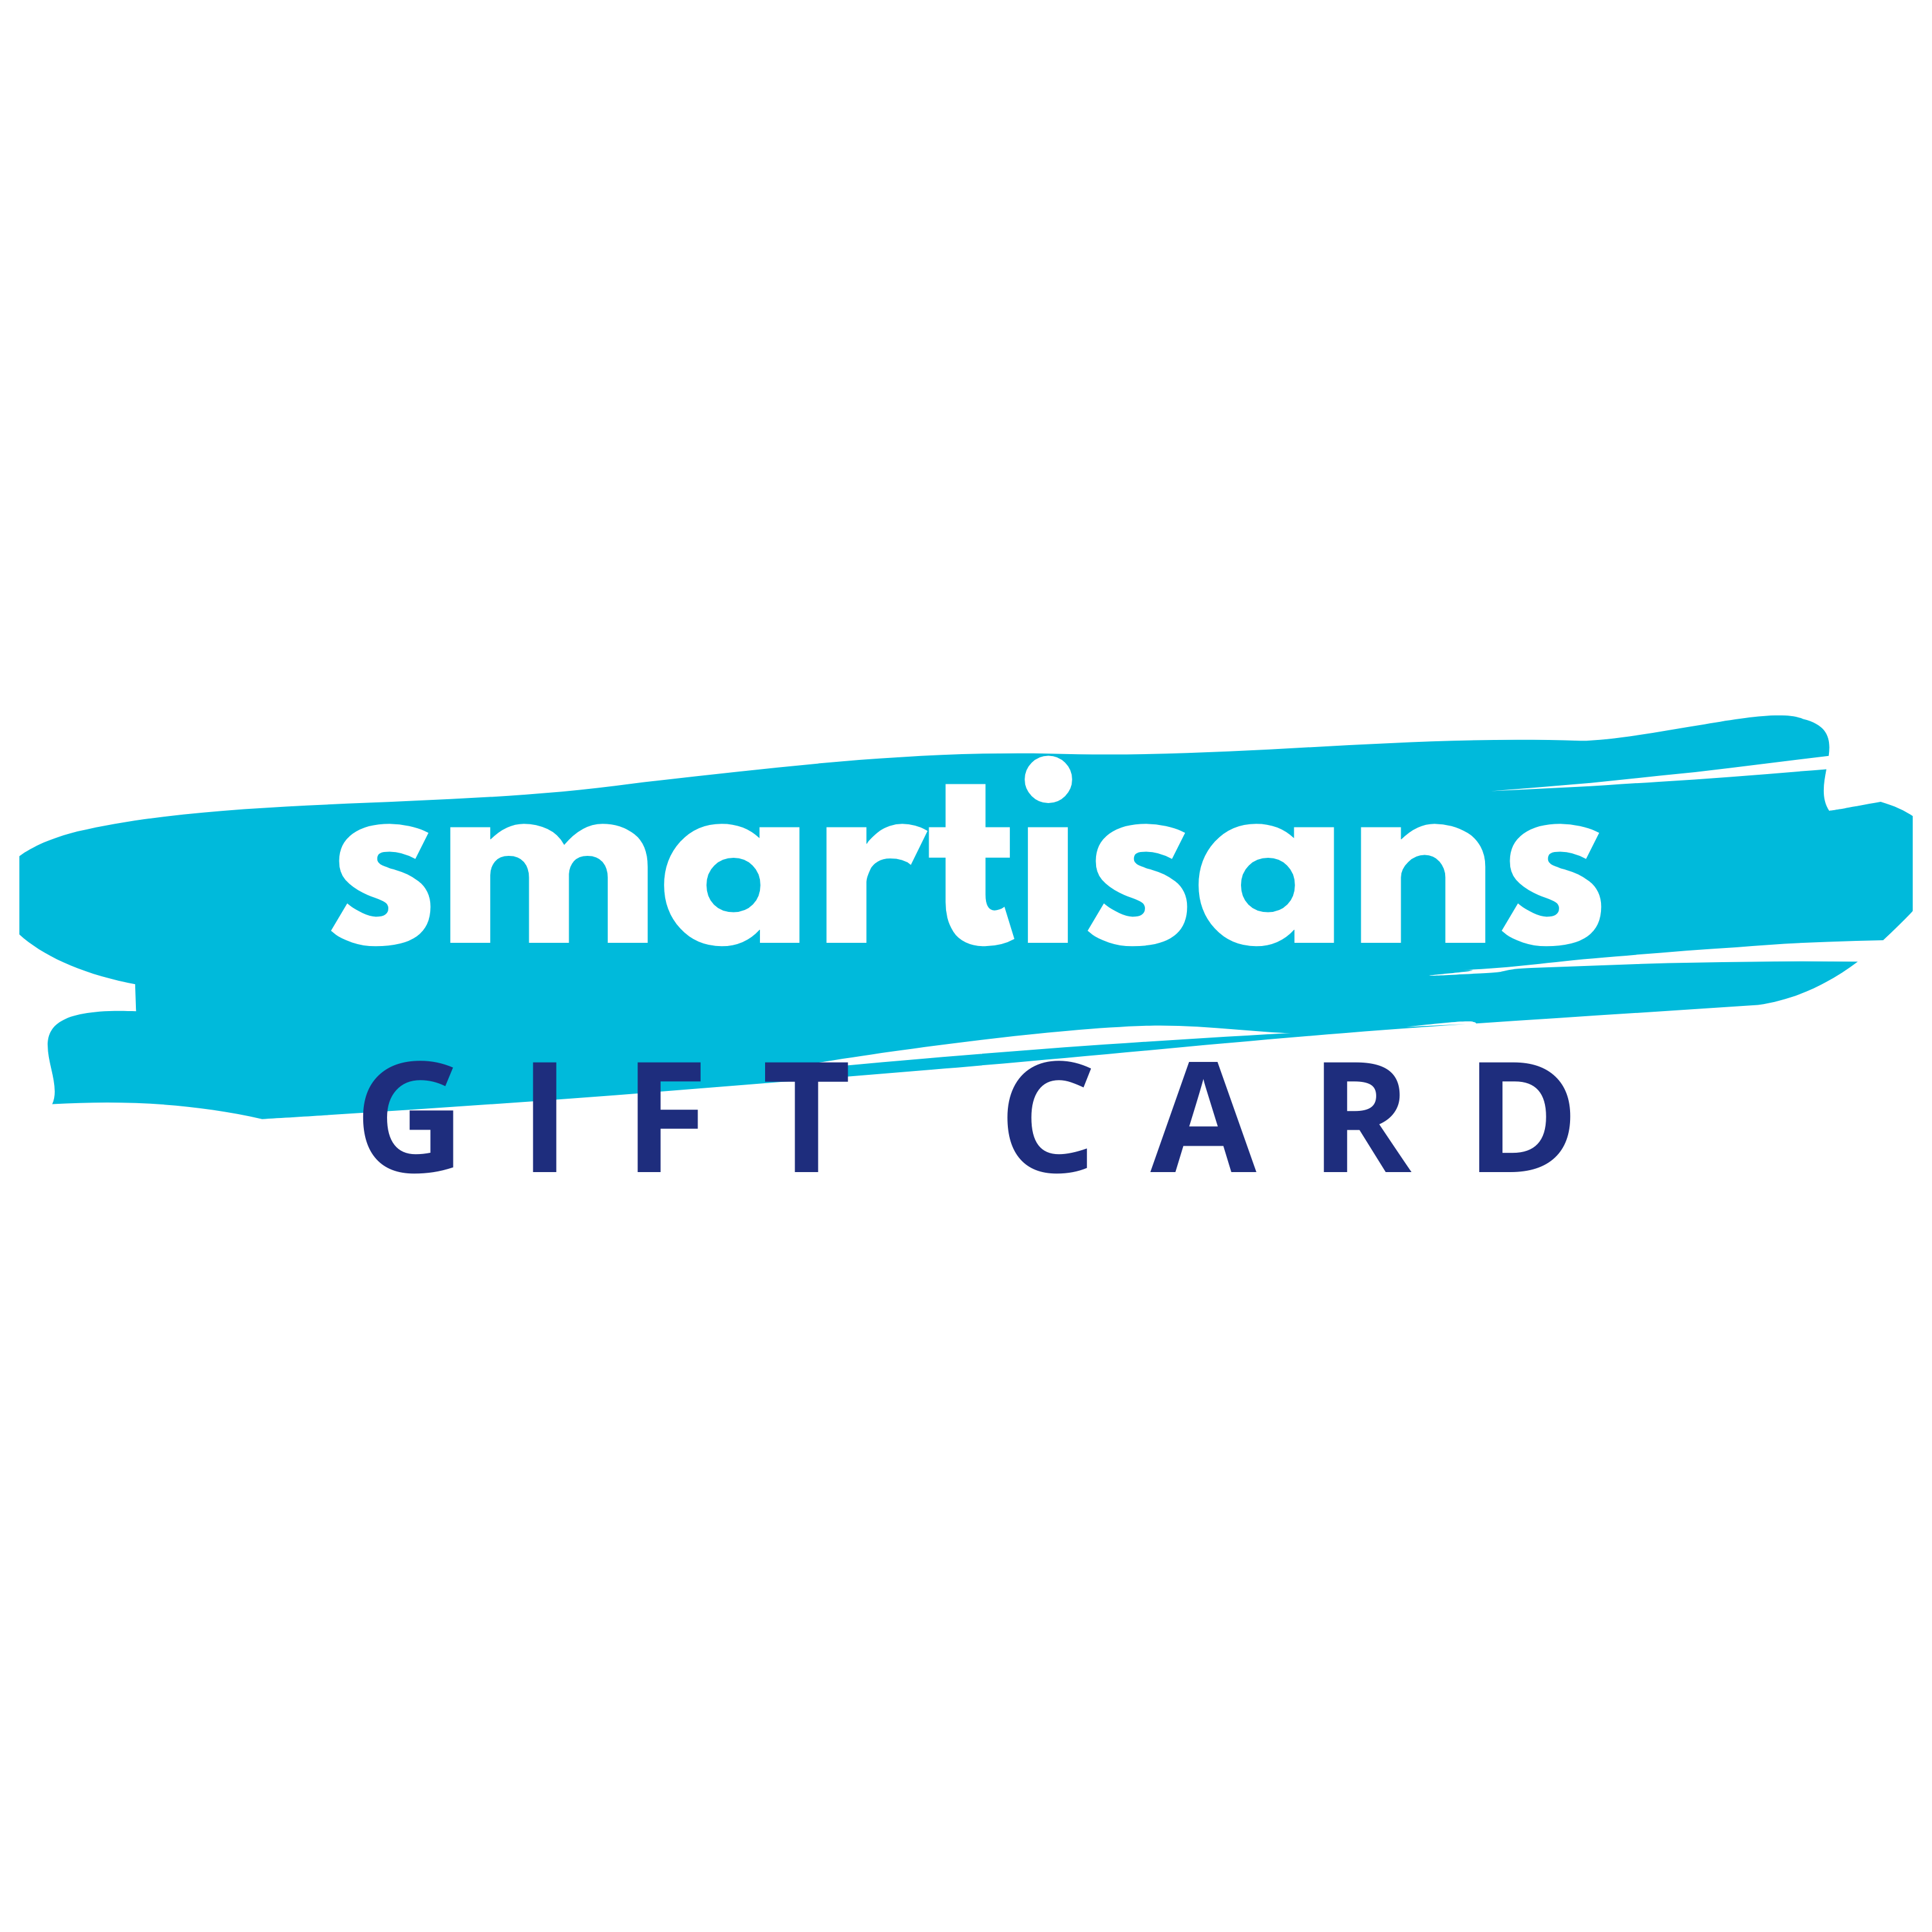 Smartisans.com Gift Cards